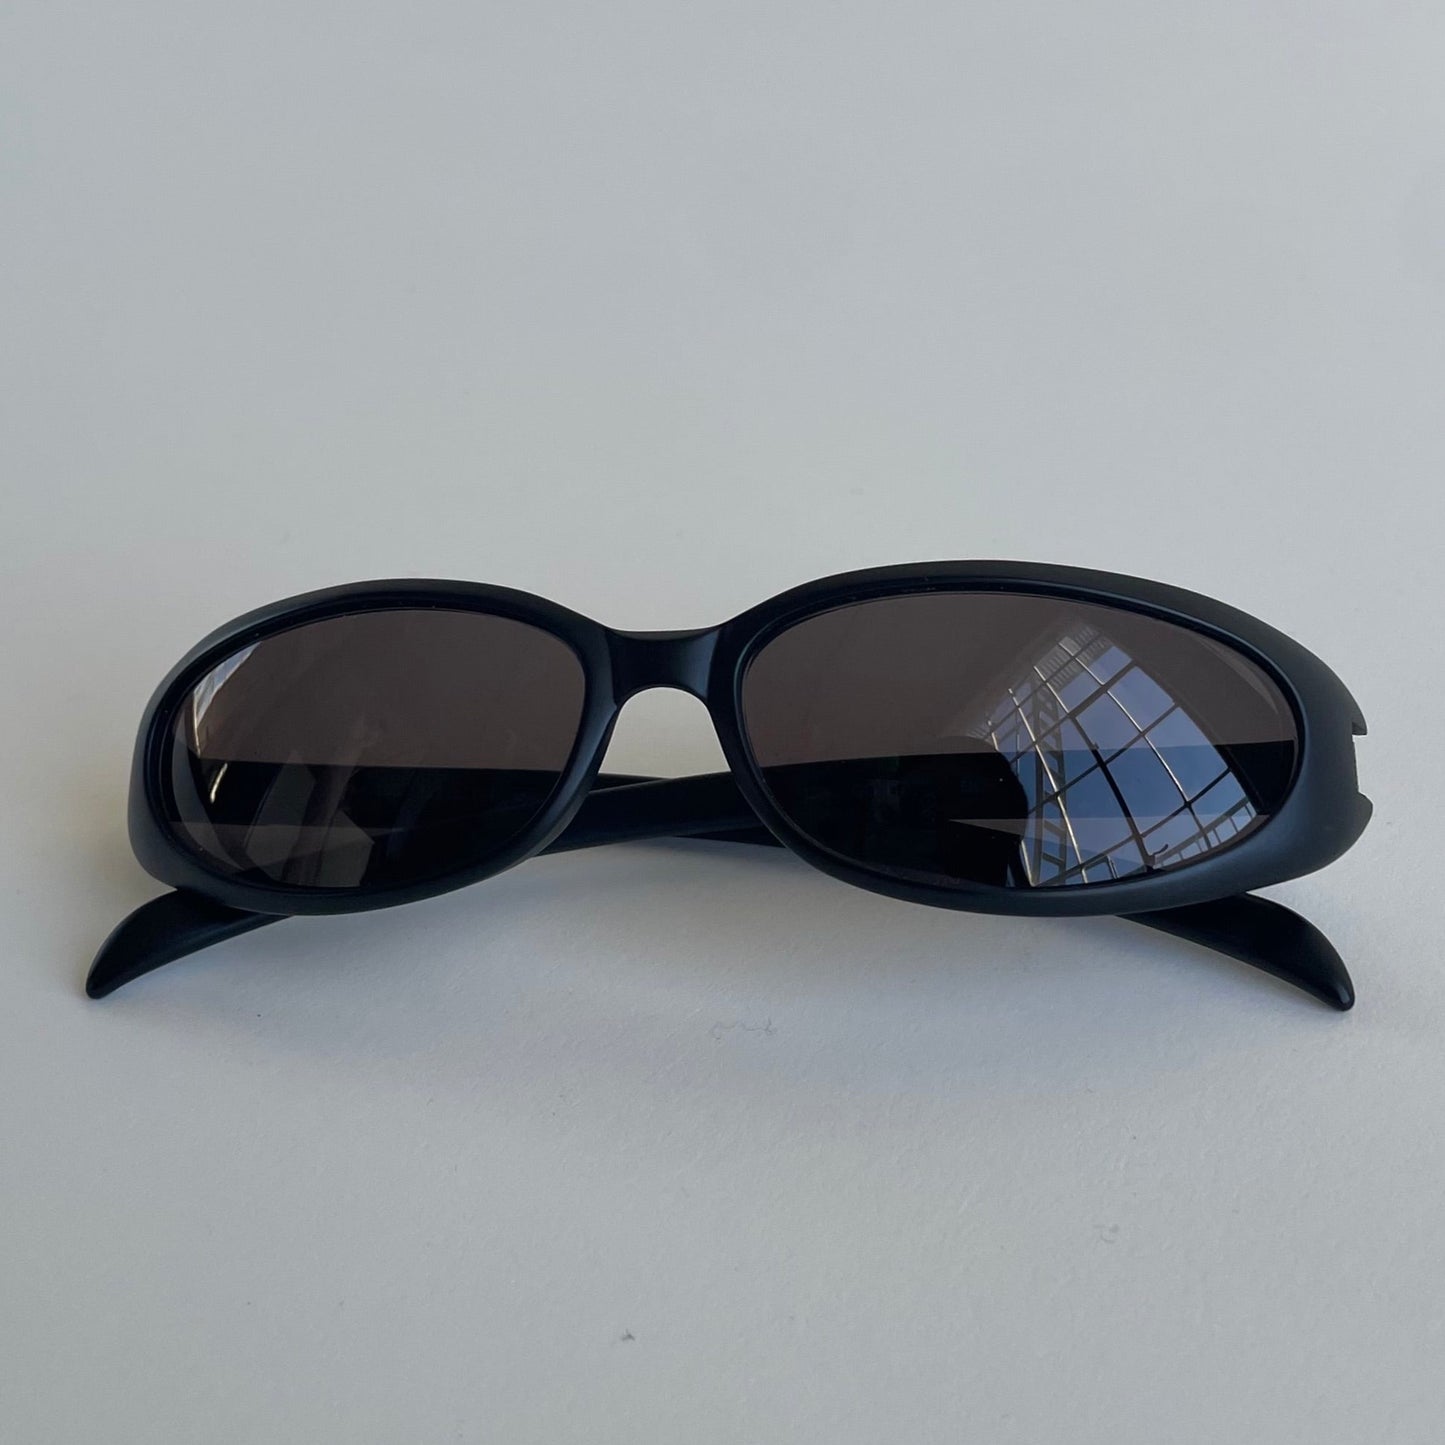 gucci sunglasses